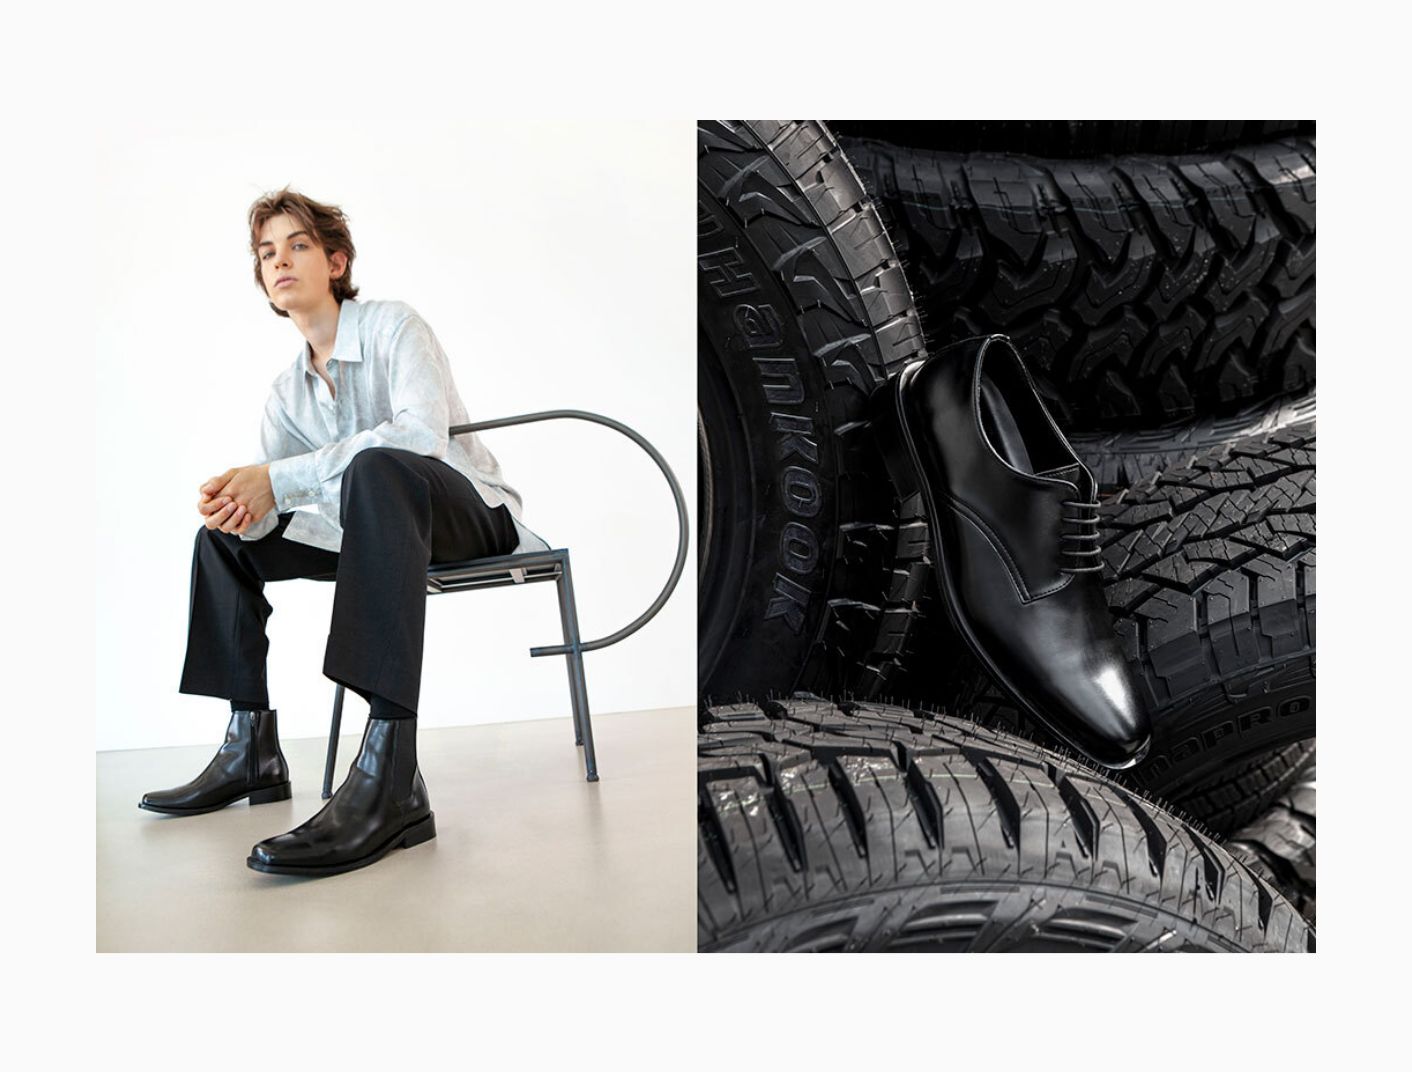 Inovasi Unik, Hankook Tire dan YASE Luncurkan Sepatu Daur Ulang dari Ban